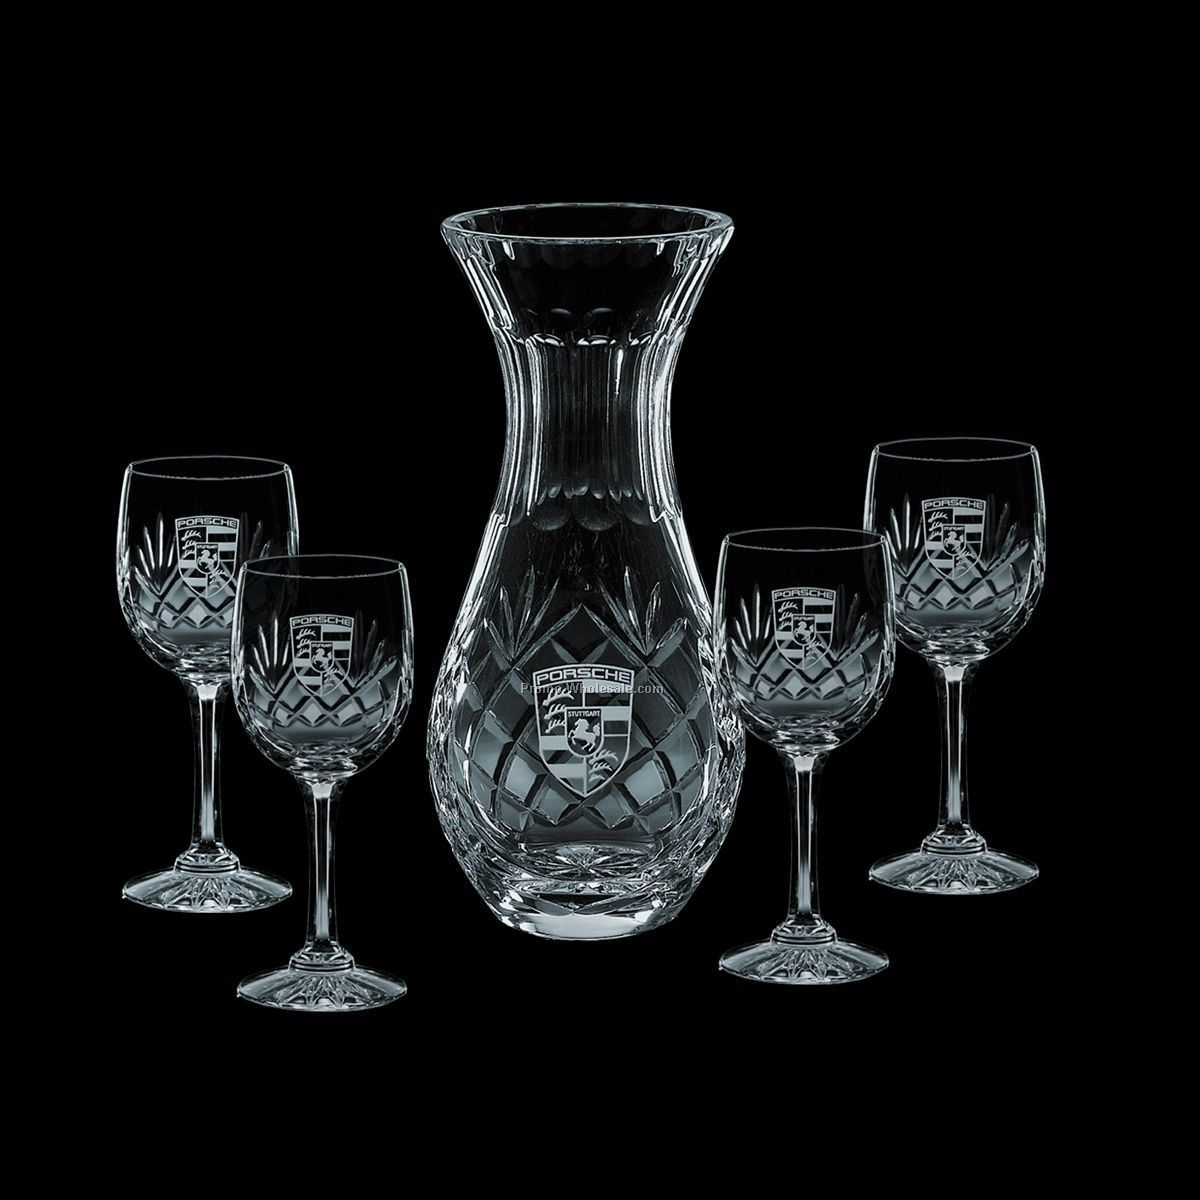 30 Oz. Medallion Crystal Carafe & 4 Wine Glasses